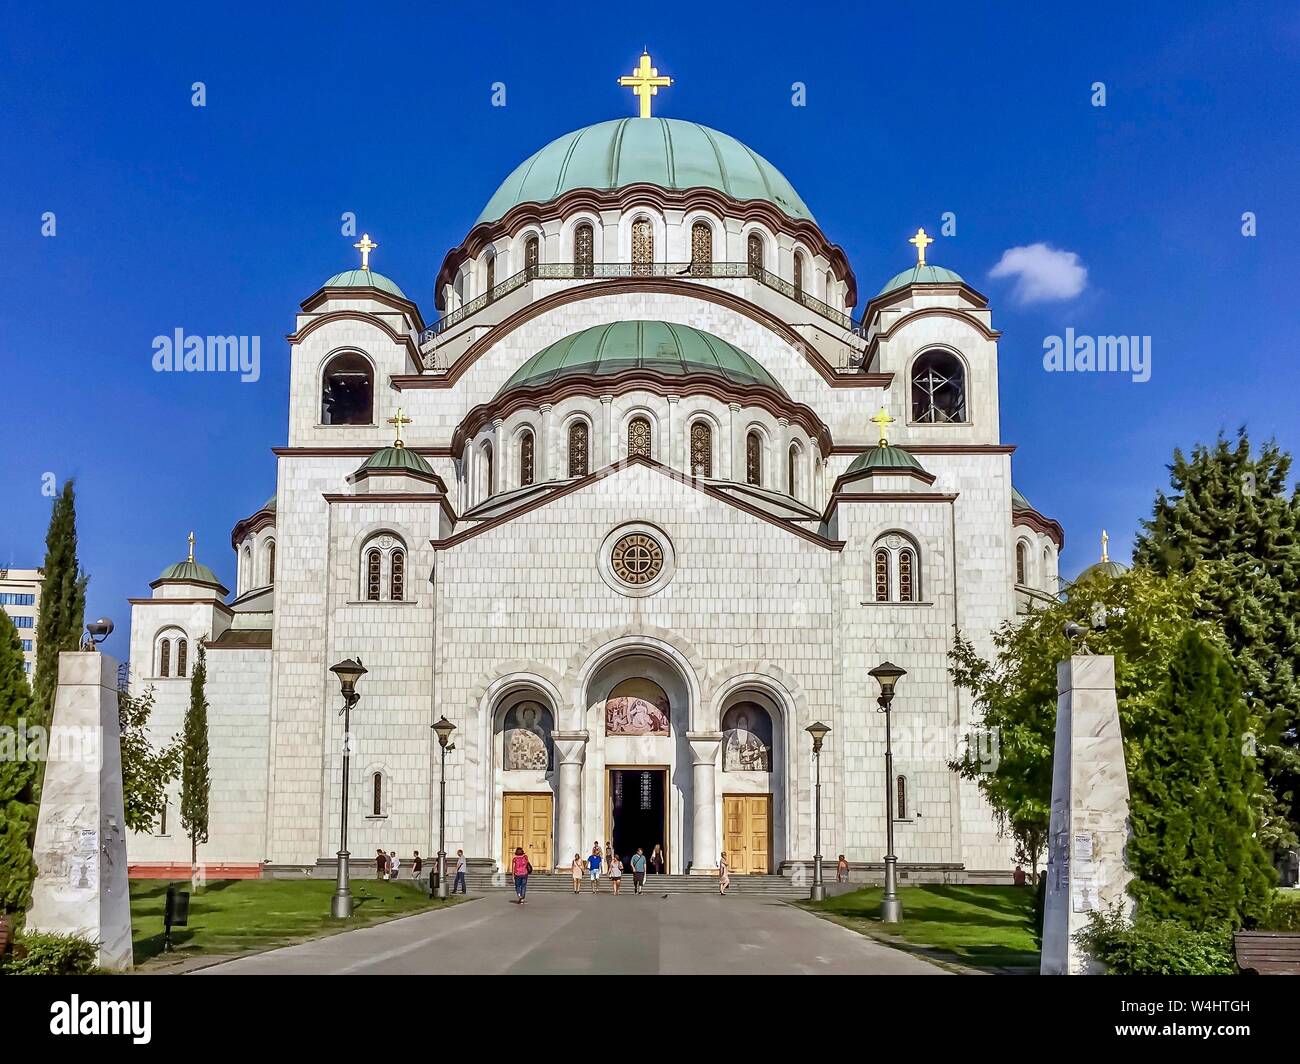 Vista frontale della Chiesa di San Sava (Hram Svetog Save in serbo), una delle più grandi chiese ortodosse del mondo, situata a Belgrado, Serbia.b Foto Stock